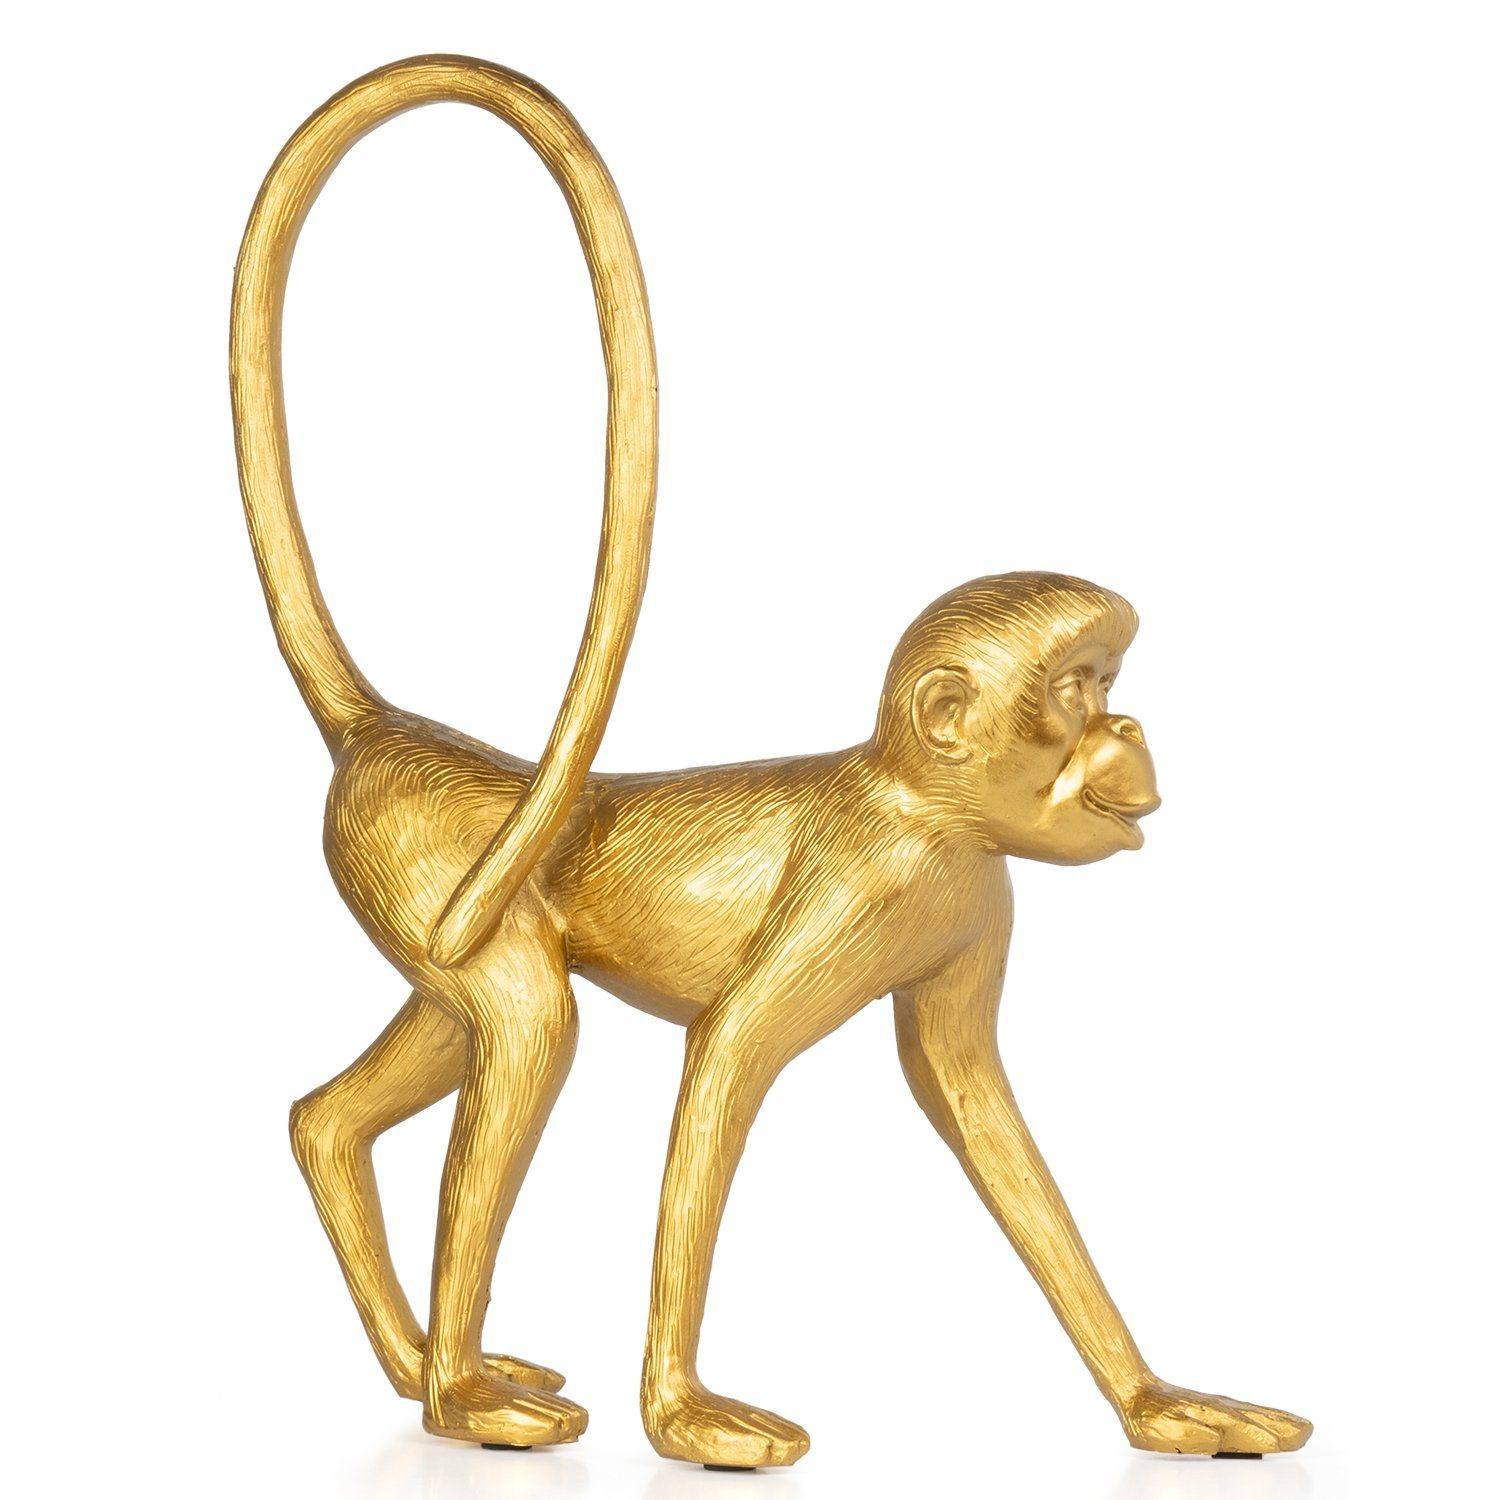 Moritz Dekofigur Deko-Figur Affe spaziert langer Schwanz aus Polyresin gold, Dekofigur aus Polyresin Dekoelement Dekoration Figuren | Dekofiguren